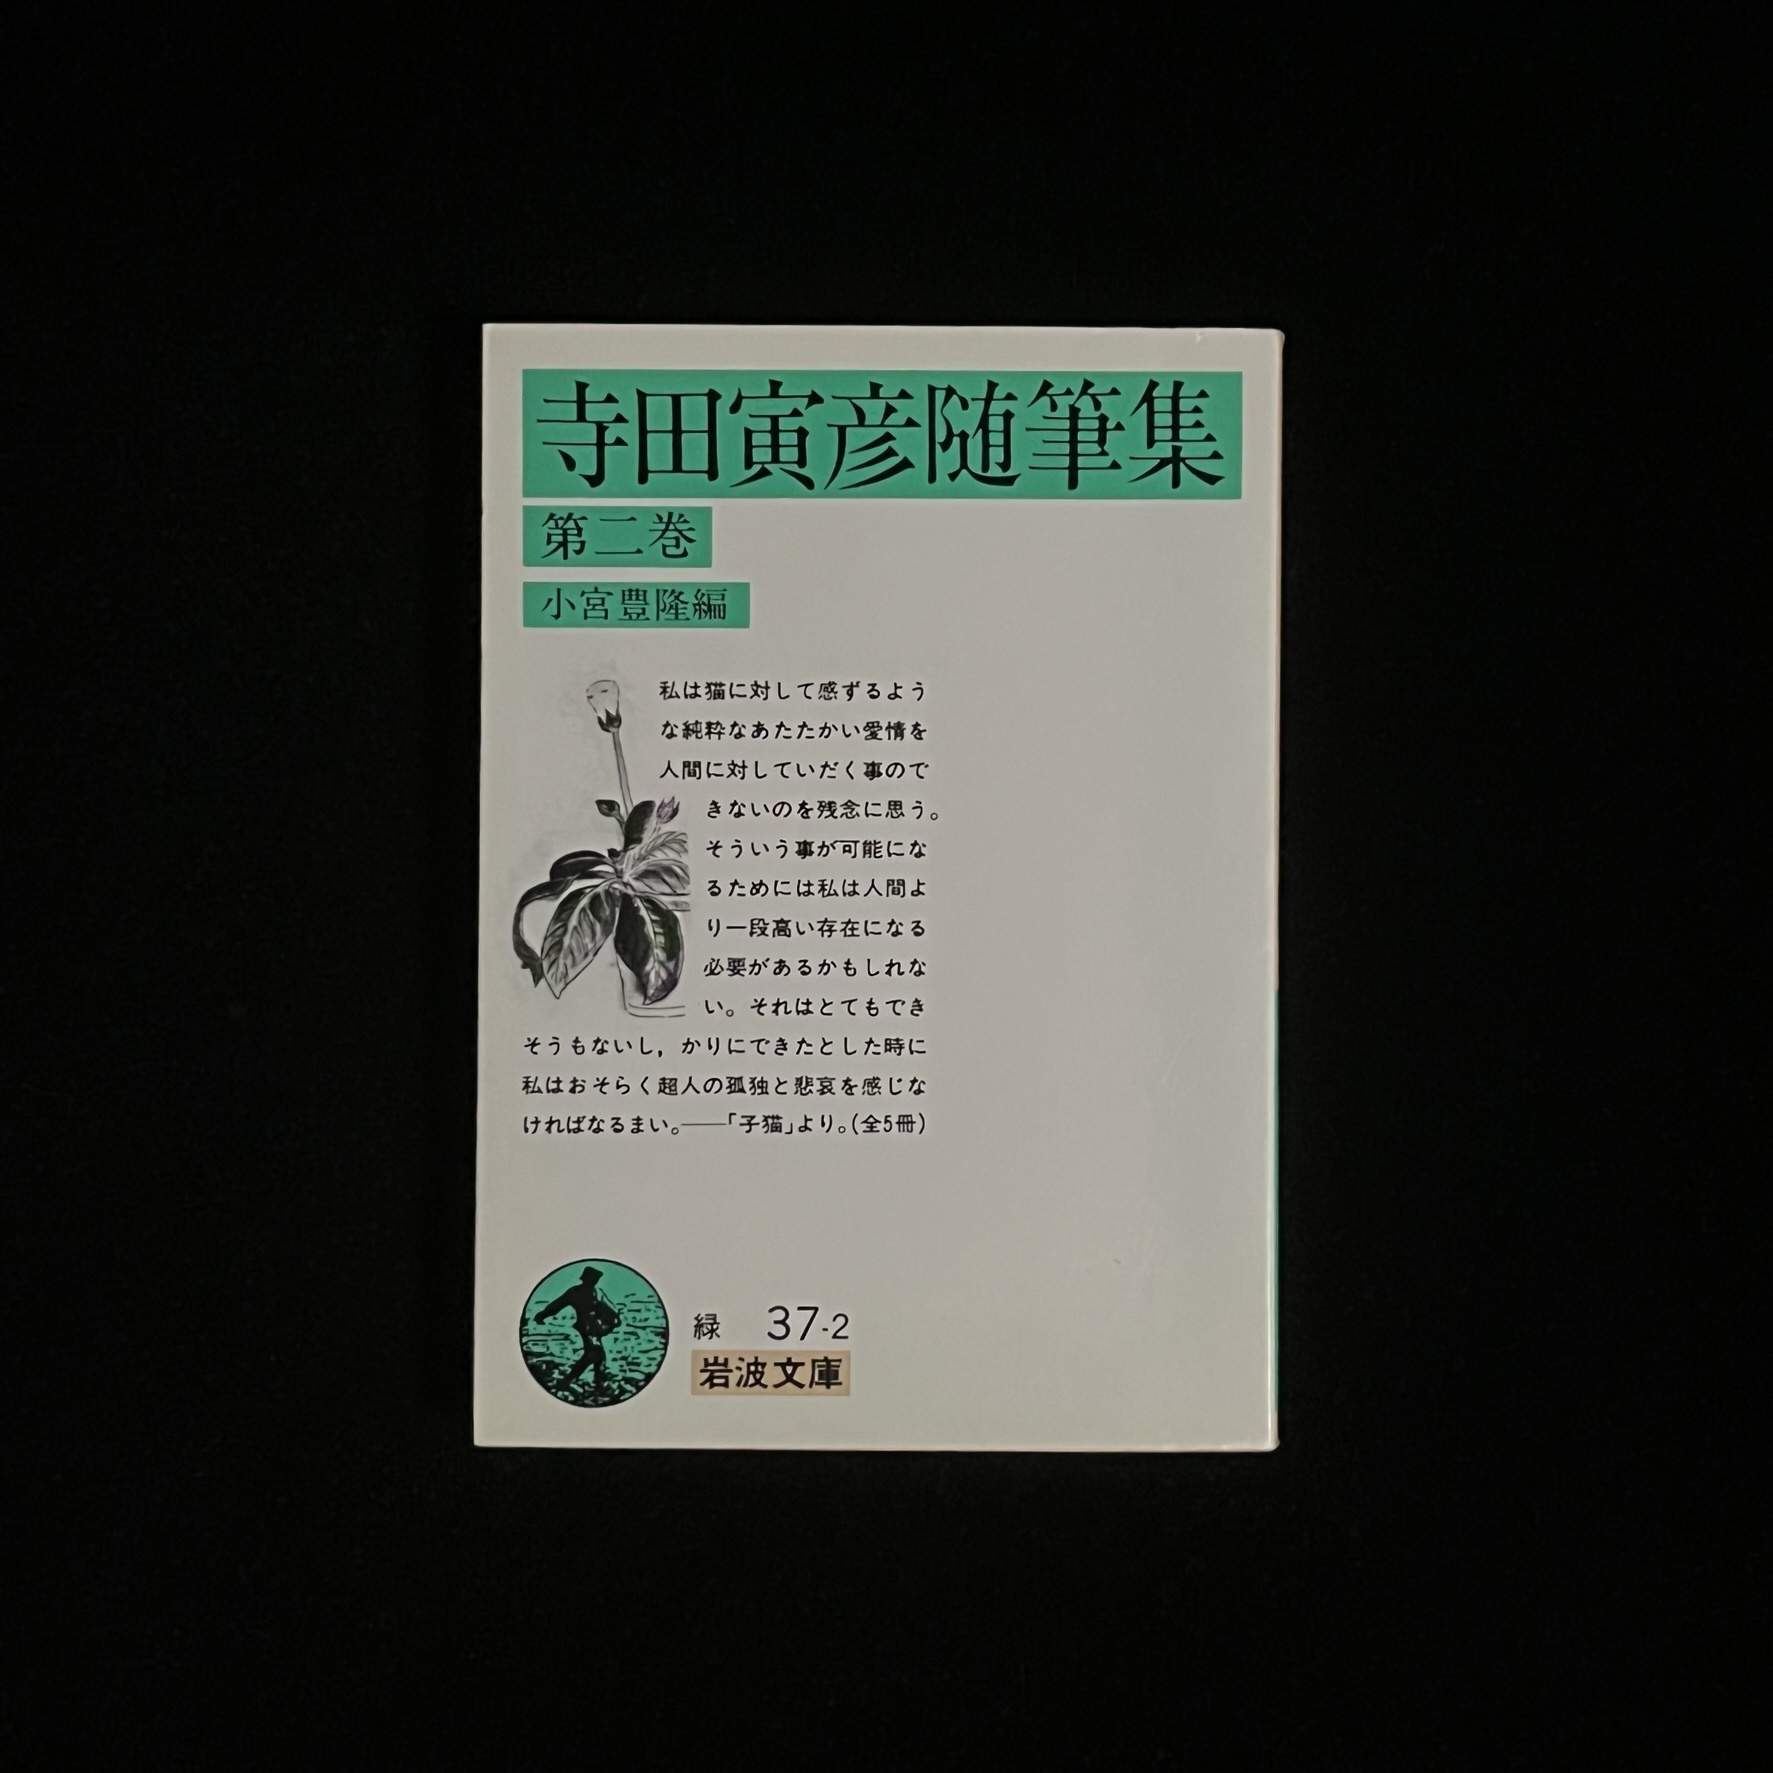 『寺田寅彦随筆集　第二巻』の本の表紙の写真。緑と白の岩波文庫の定番のカバーです。